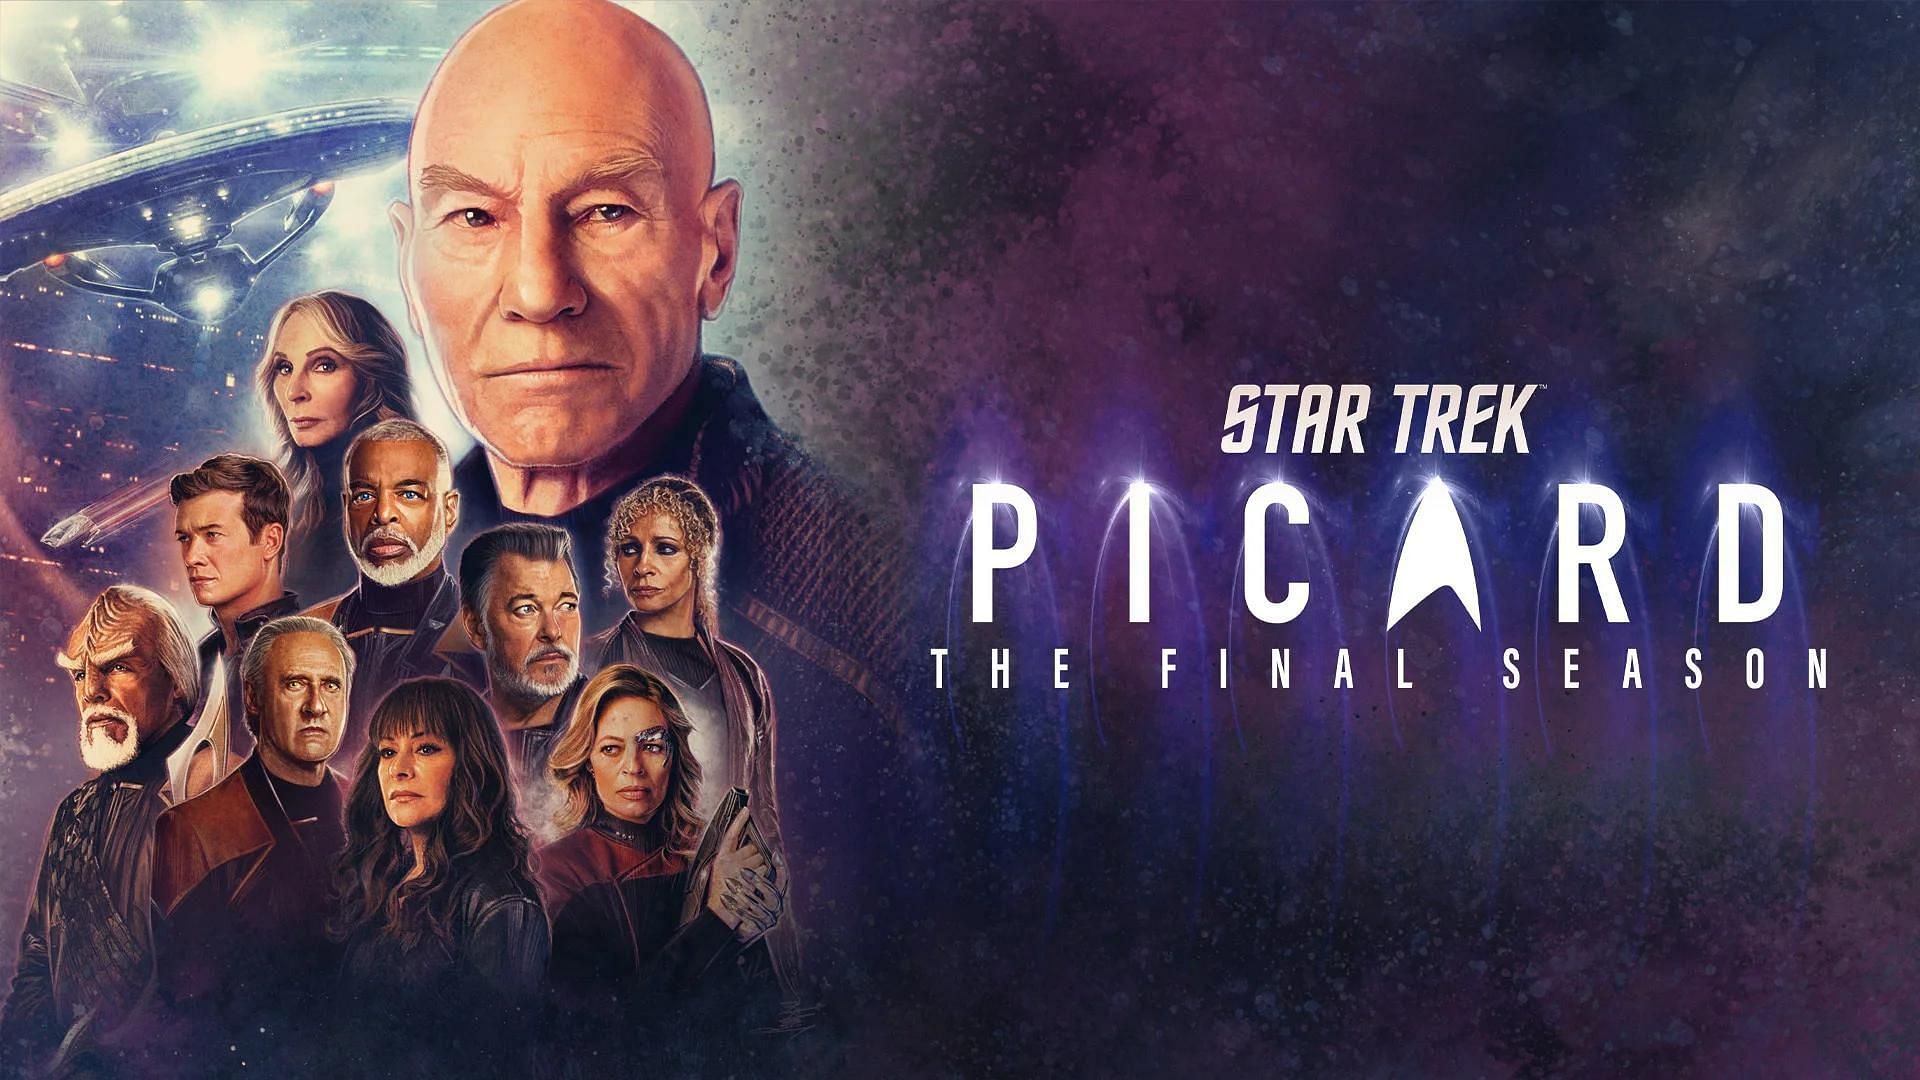 Star Trek: Picard promotional poster (Image via Star Trek)